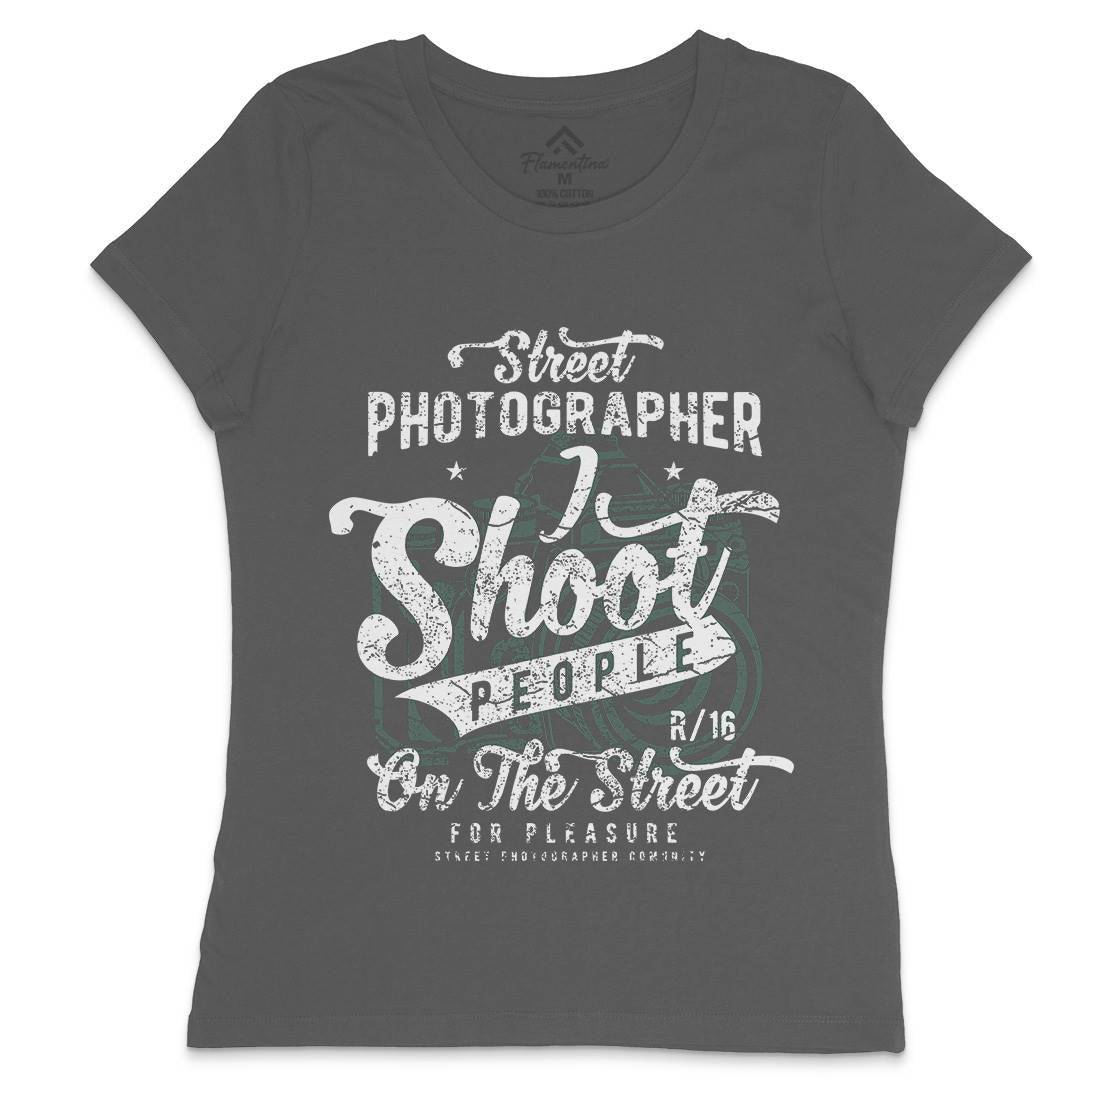 Street Photographer Womens Crew Neck T-Shirt Media A162